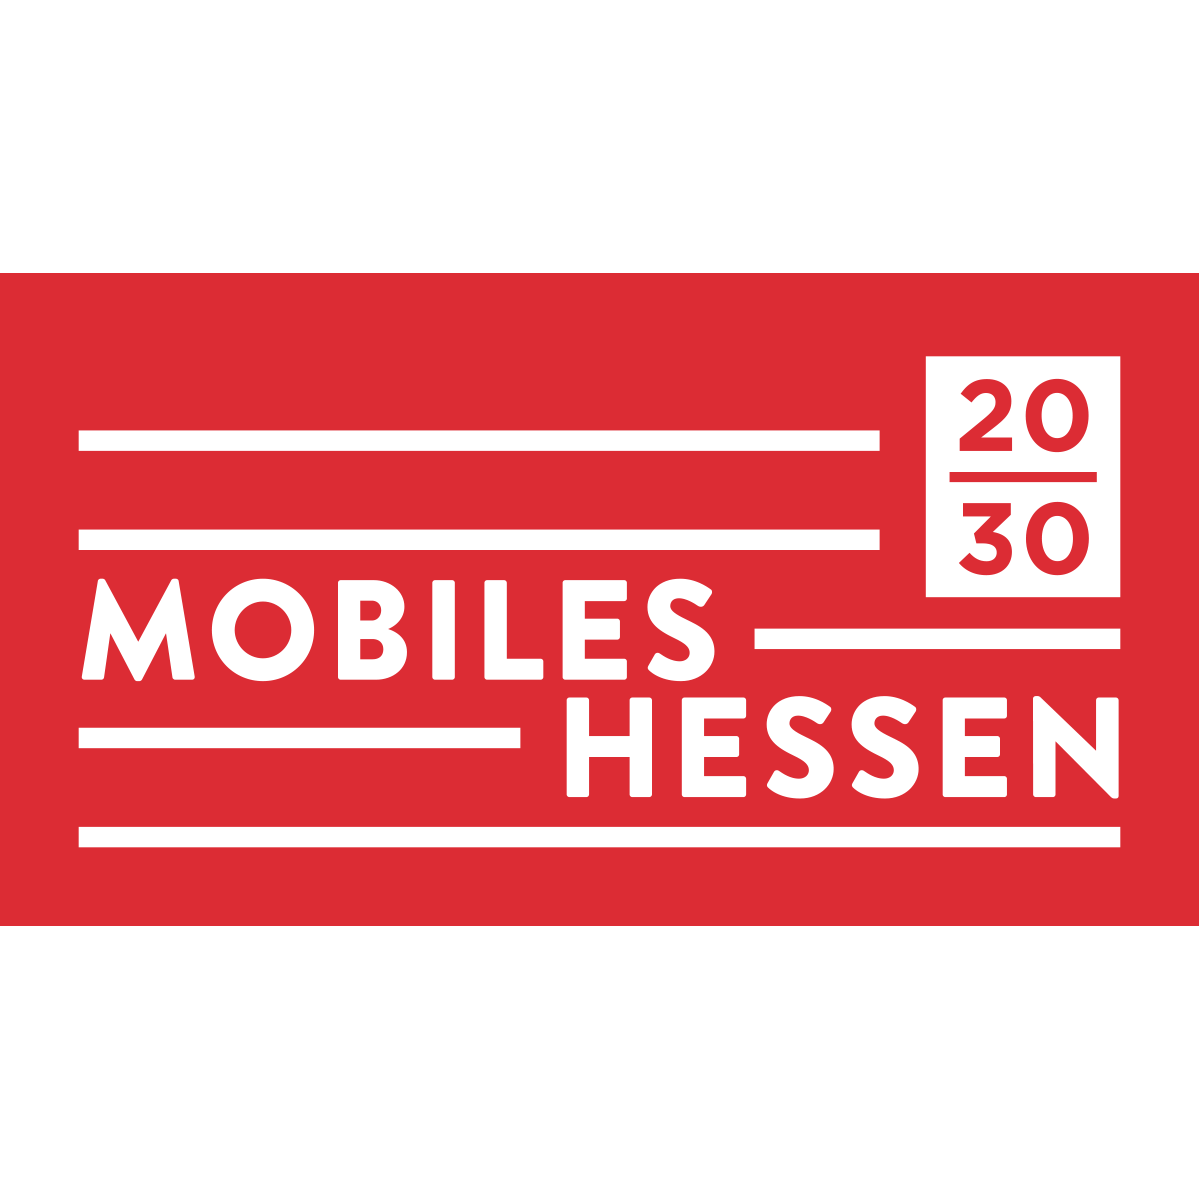 (c) Mobileshessen2030.de